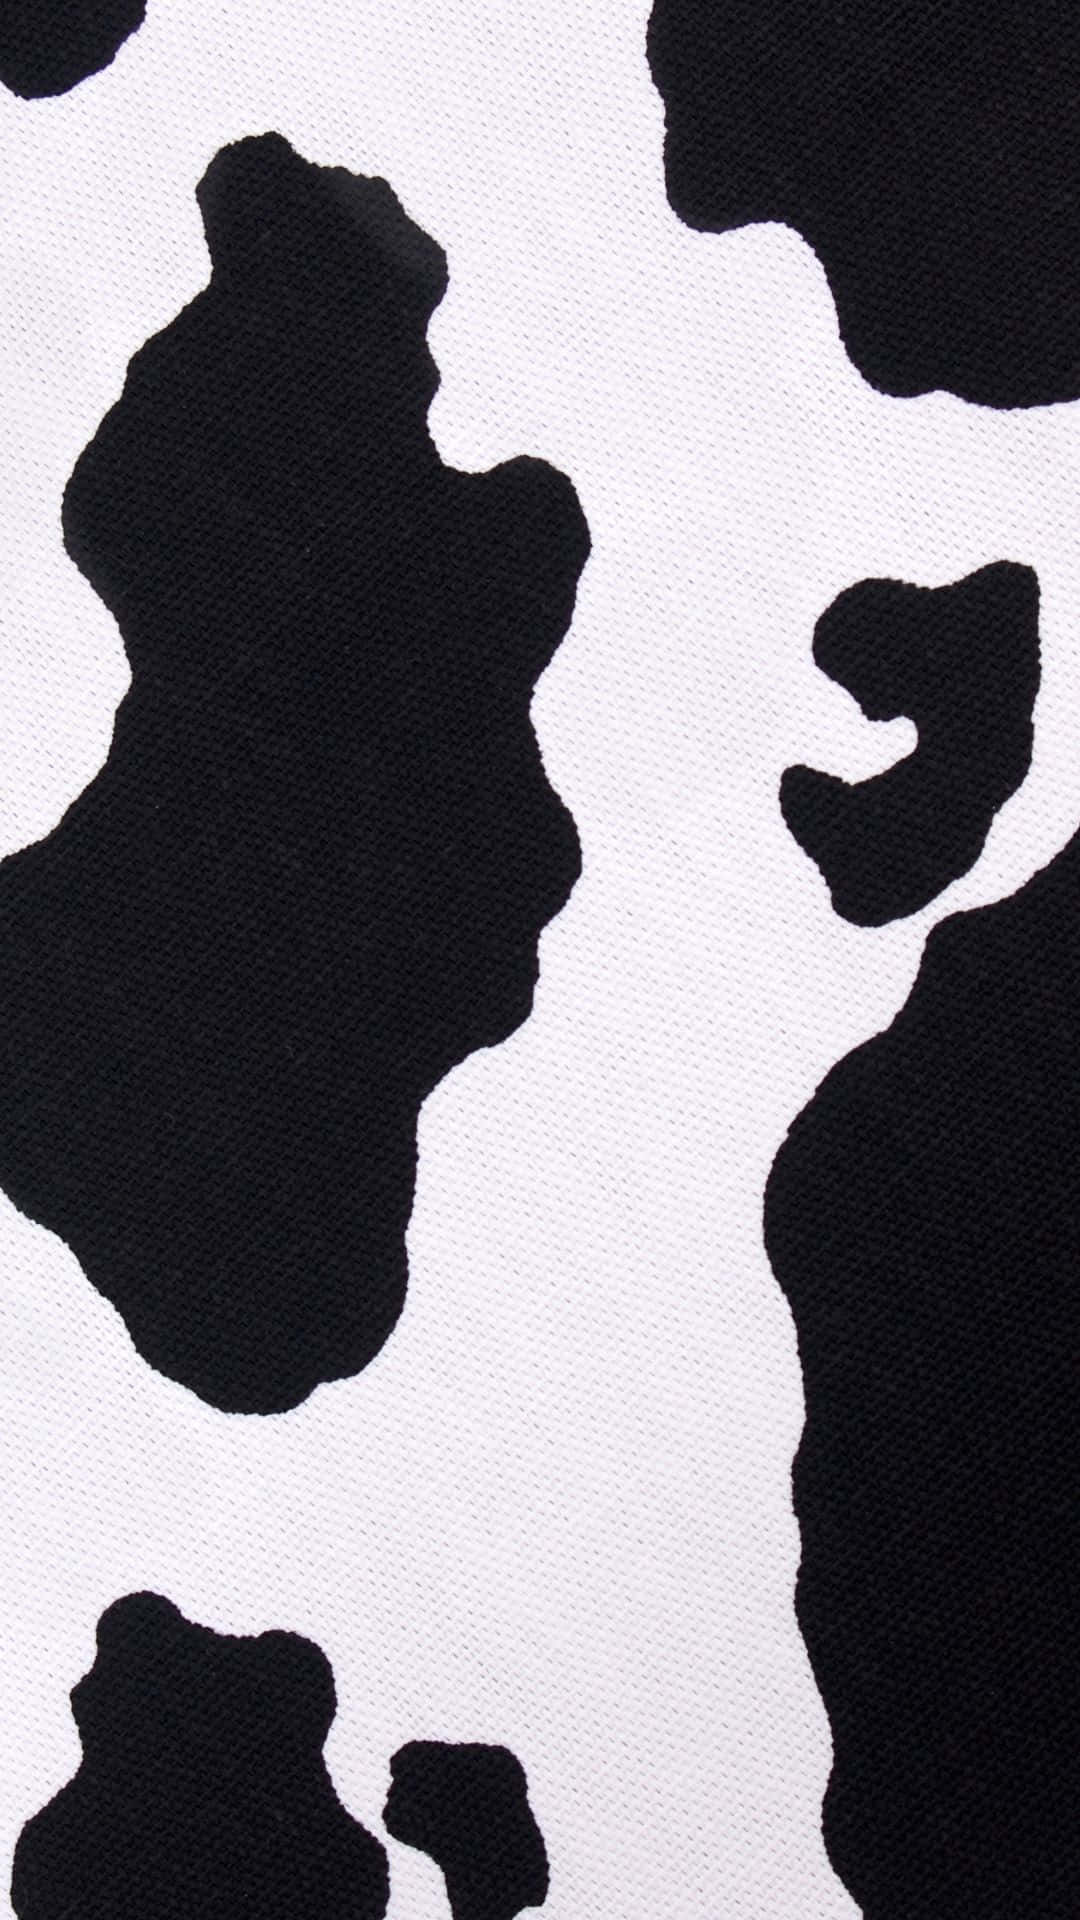 Cow Print T Shirt Black White Wallpaper